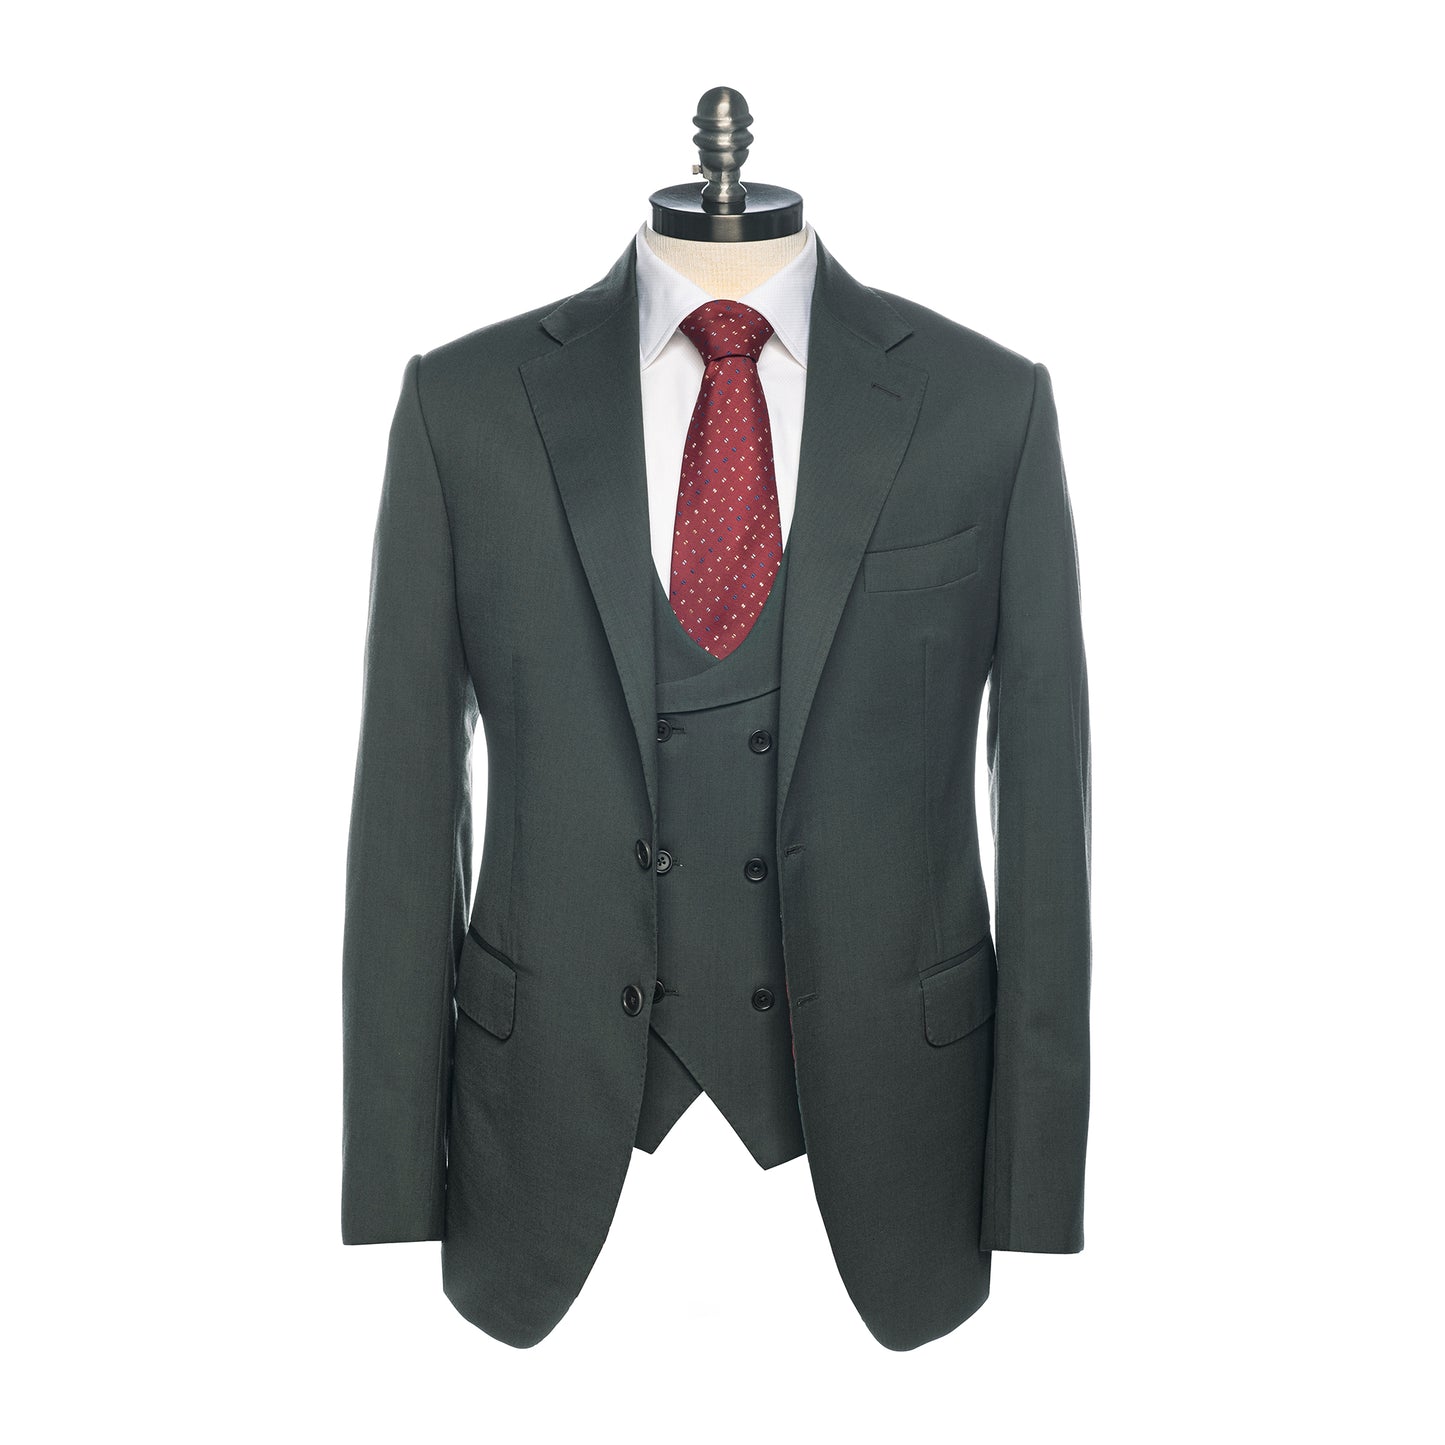 Olive color jacket for three pcs men's suit.